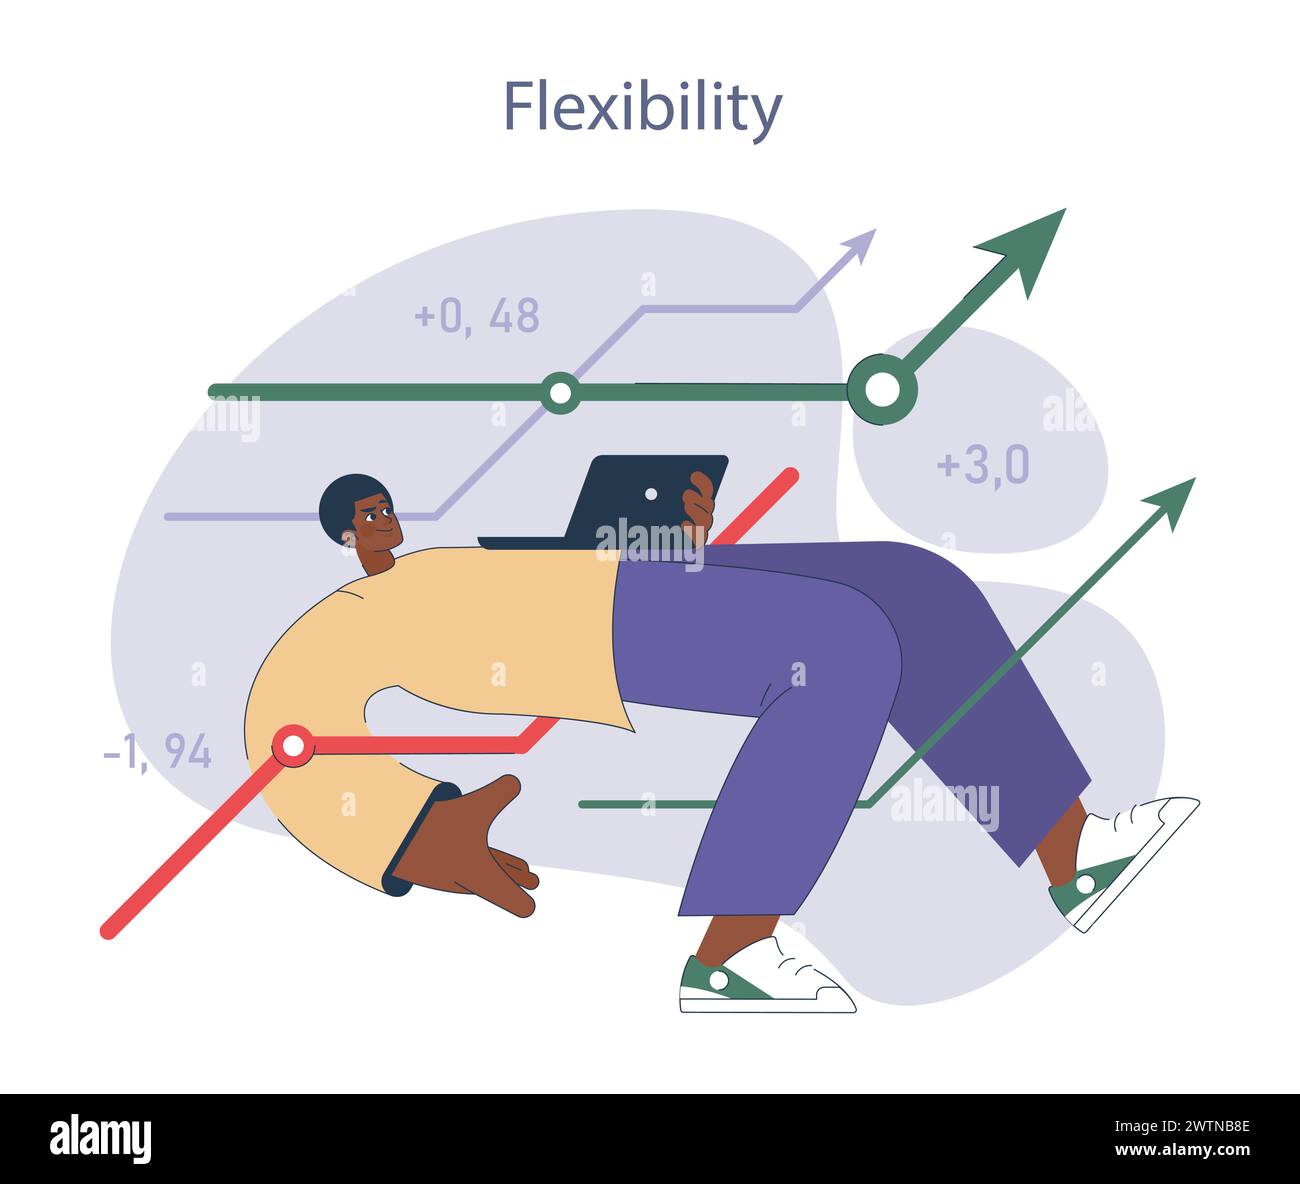 Flessibilità. Un professionista agile che si adatta alle tendenze del mercato con un background di grafici di crescita. Simboleggia l'adattamento strategico. Illustrazione Vettoriale